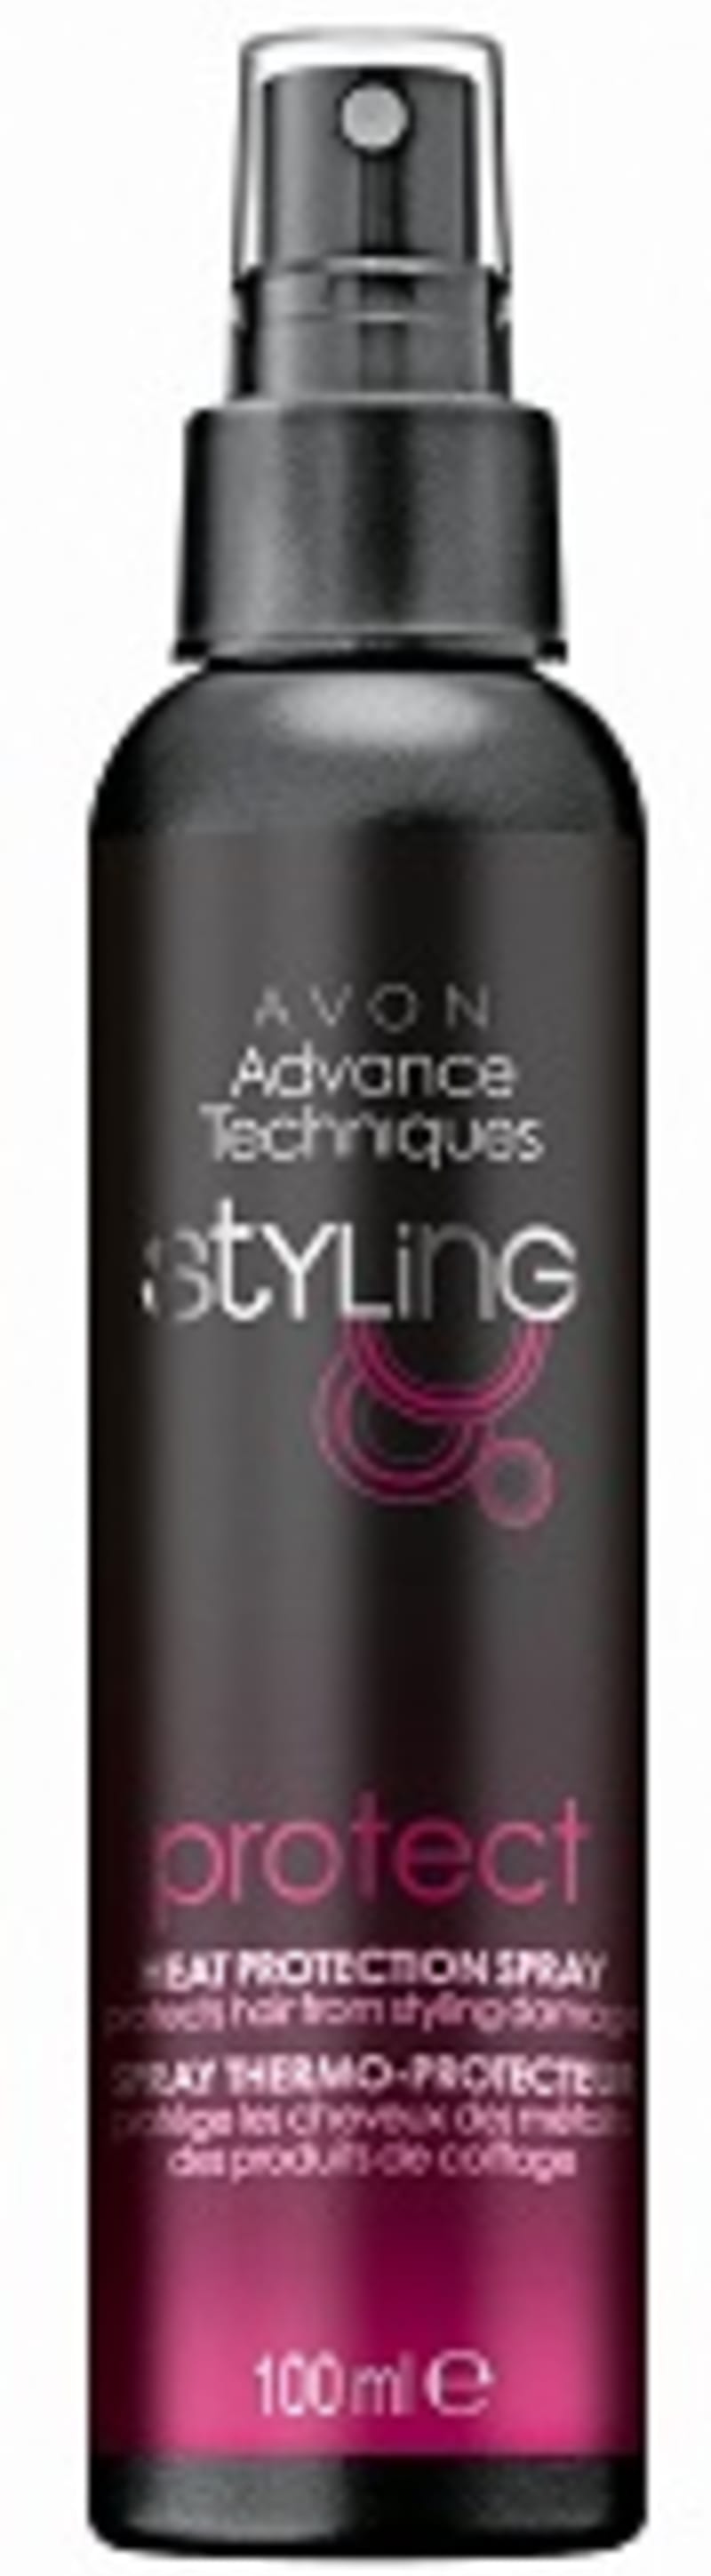 Pro ochranu pramínků před horkem: sprej bránící dehydrataci vlasů Advance Techniques Avon, 139 Kč